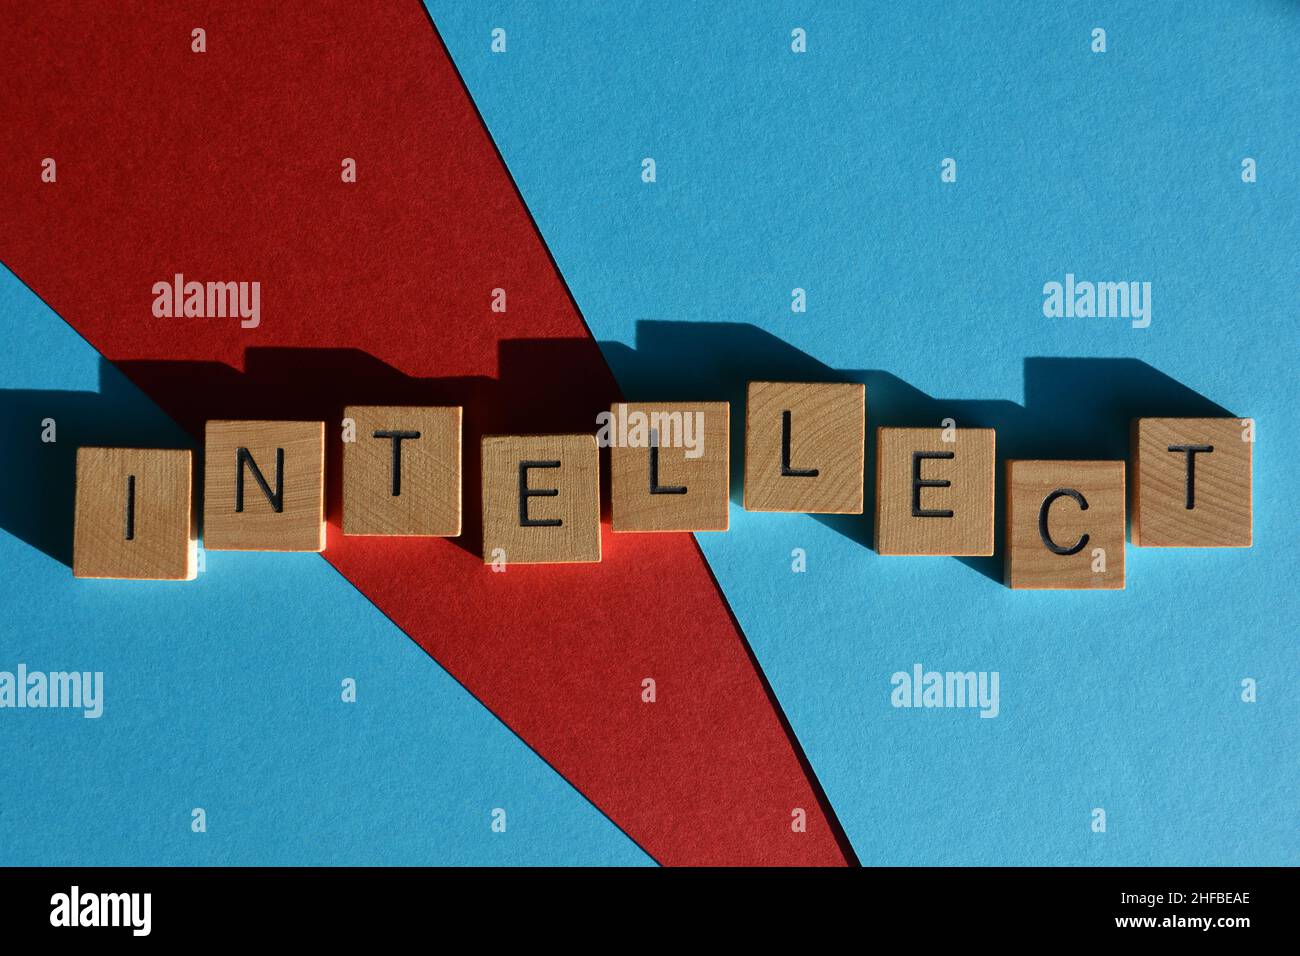 Intelletto, parola in lettere di legno, isolato su sfondo rosso e blu Foto Stock